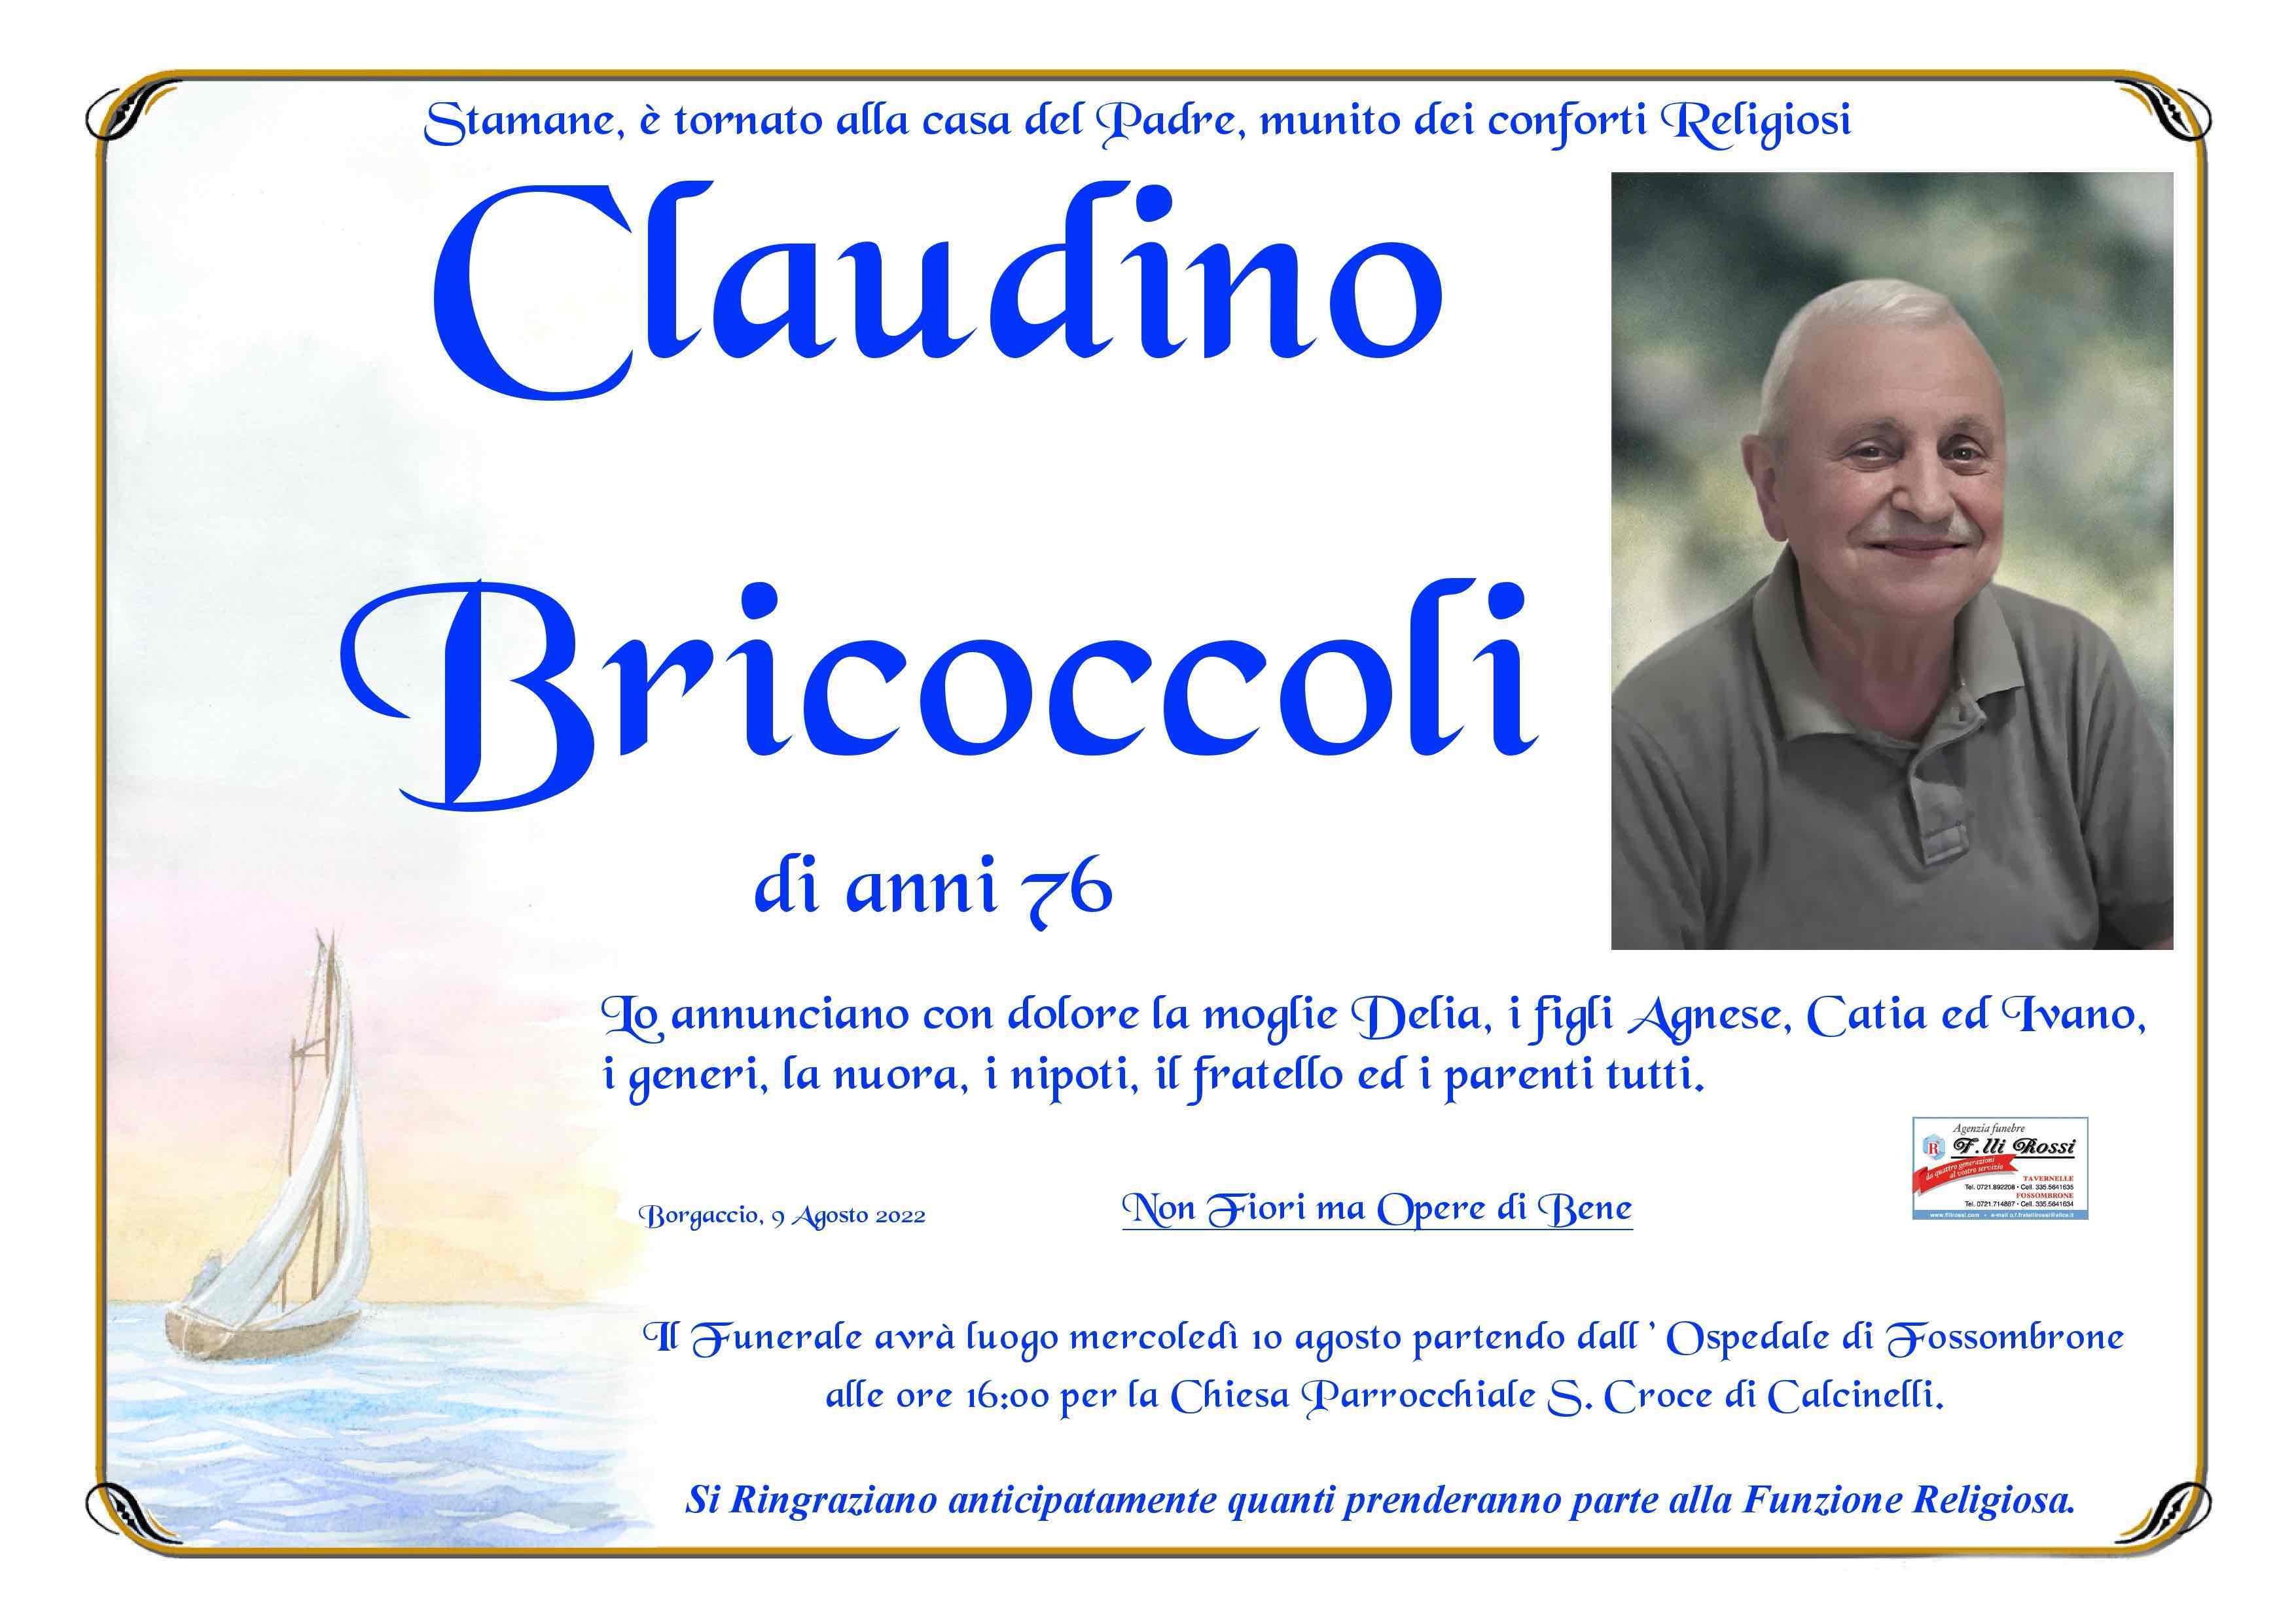 Claudino Bricoccoli